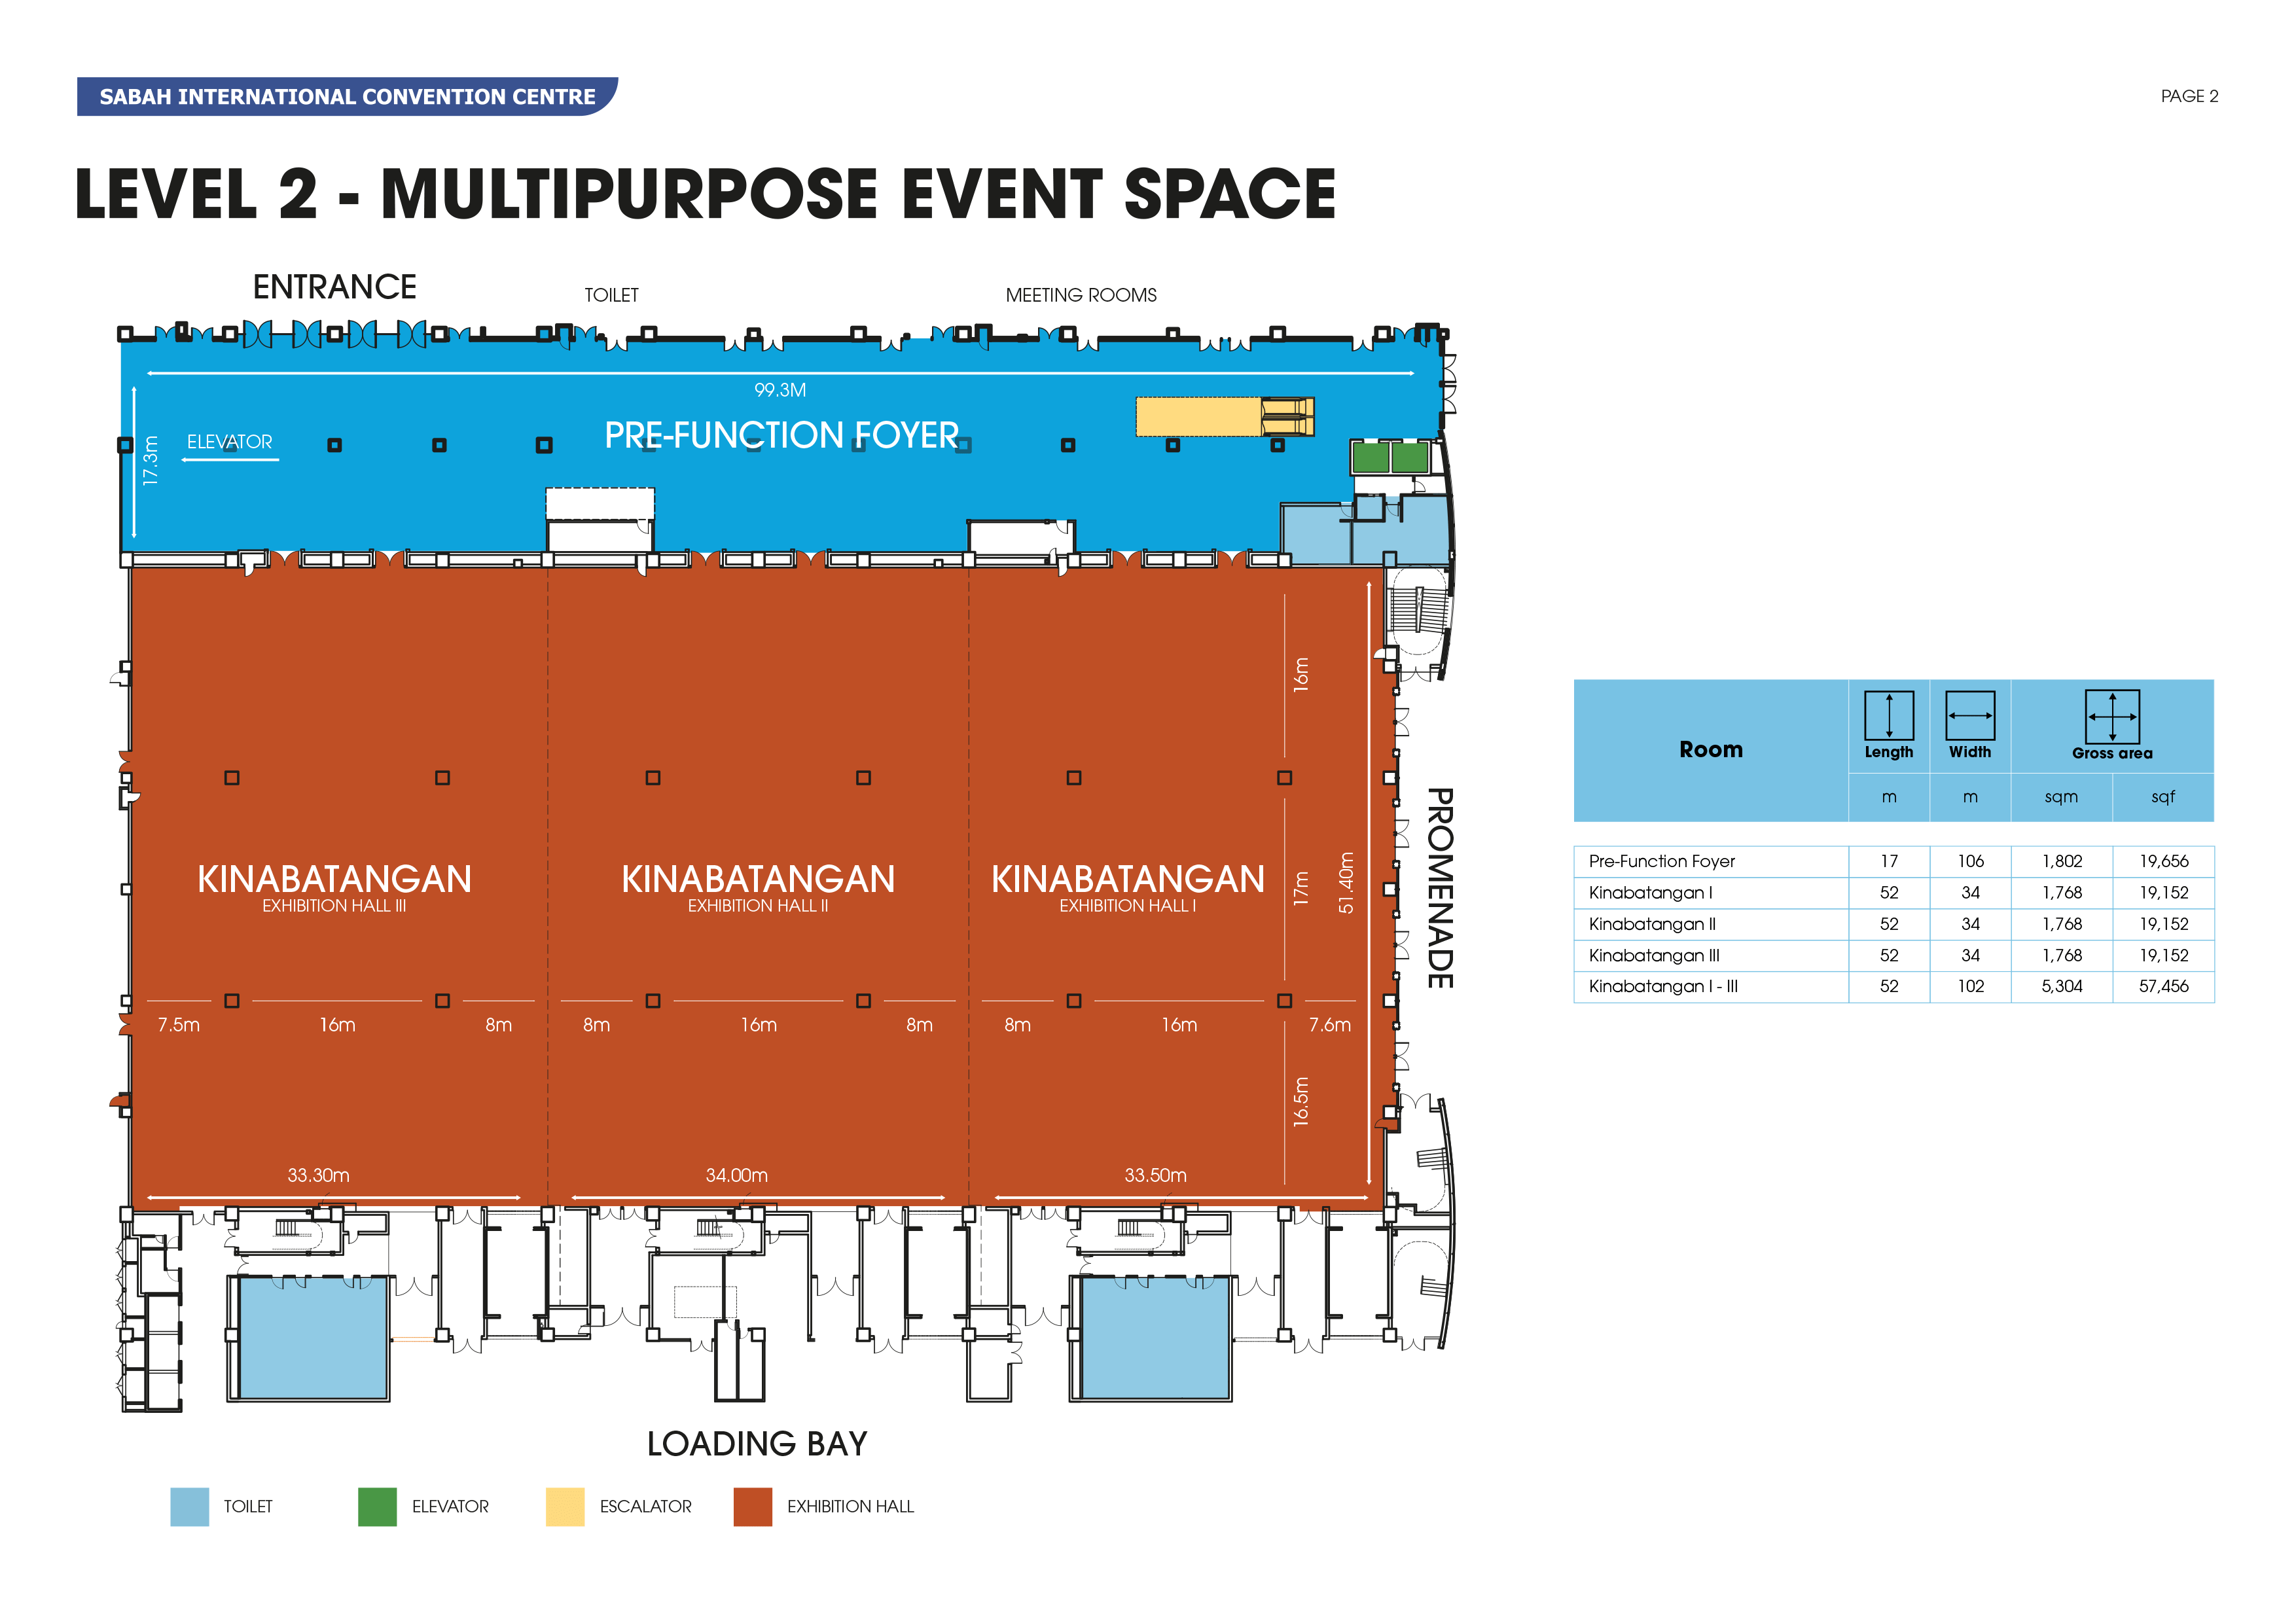 Level 2 - Multipurpose Event Space